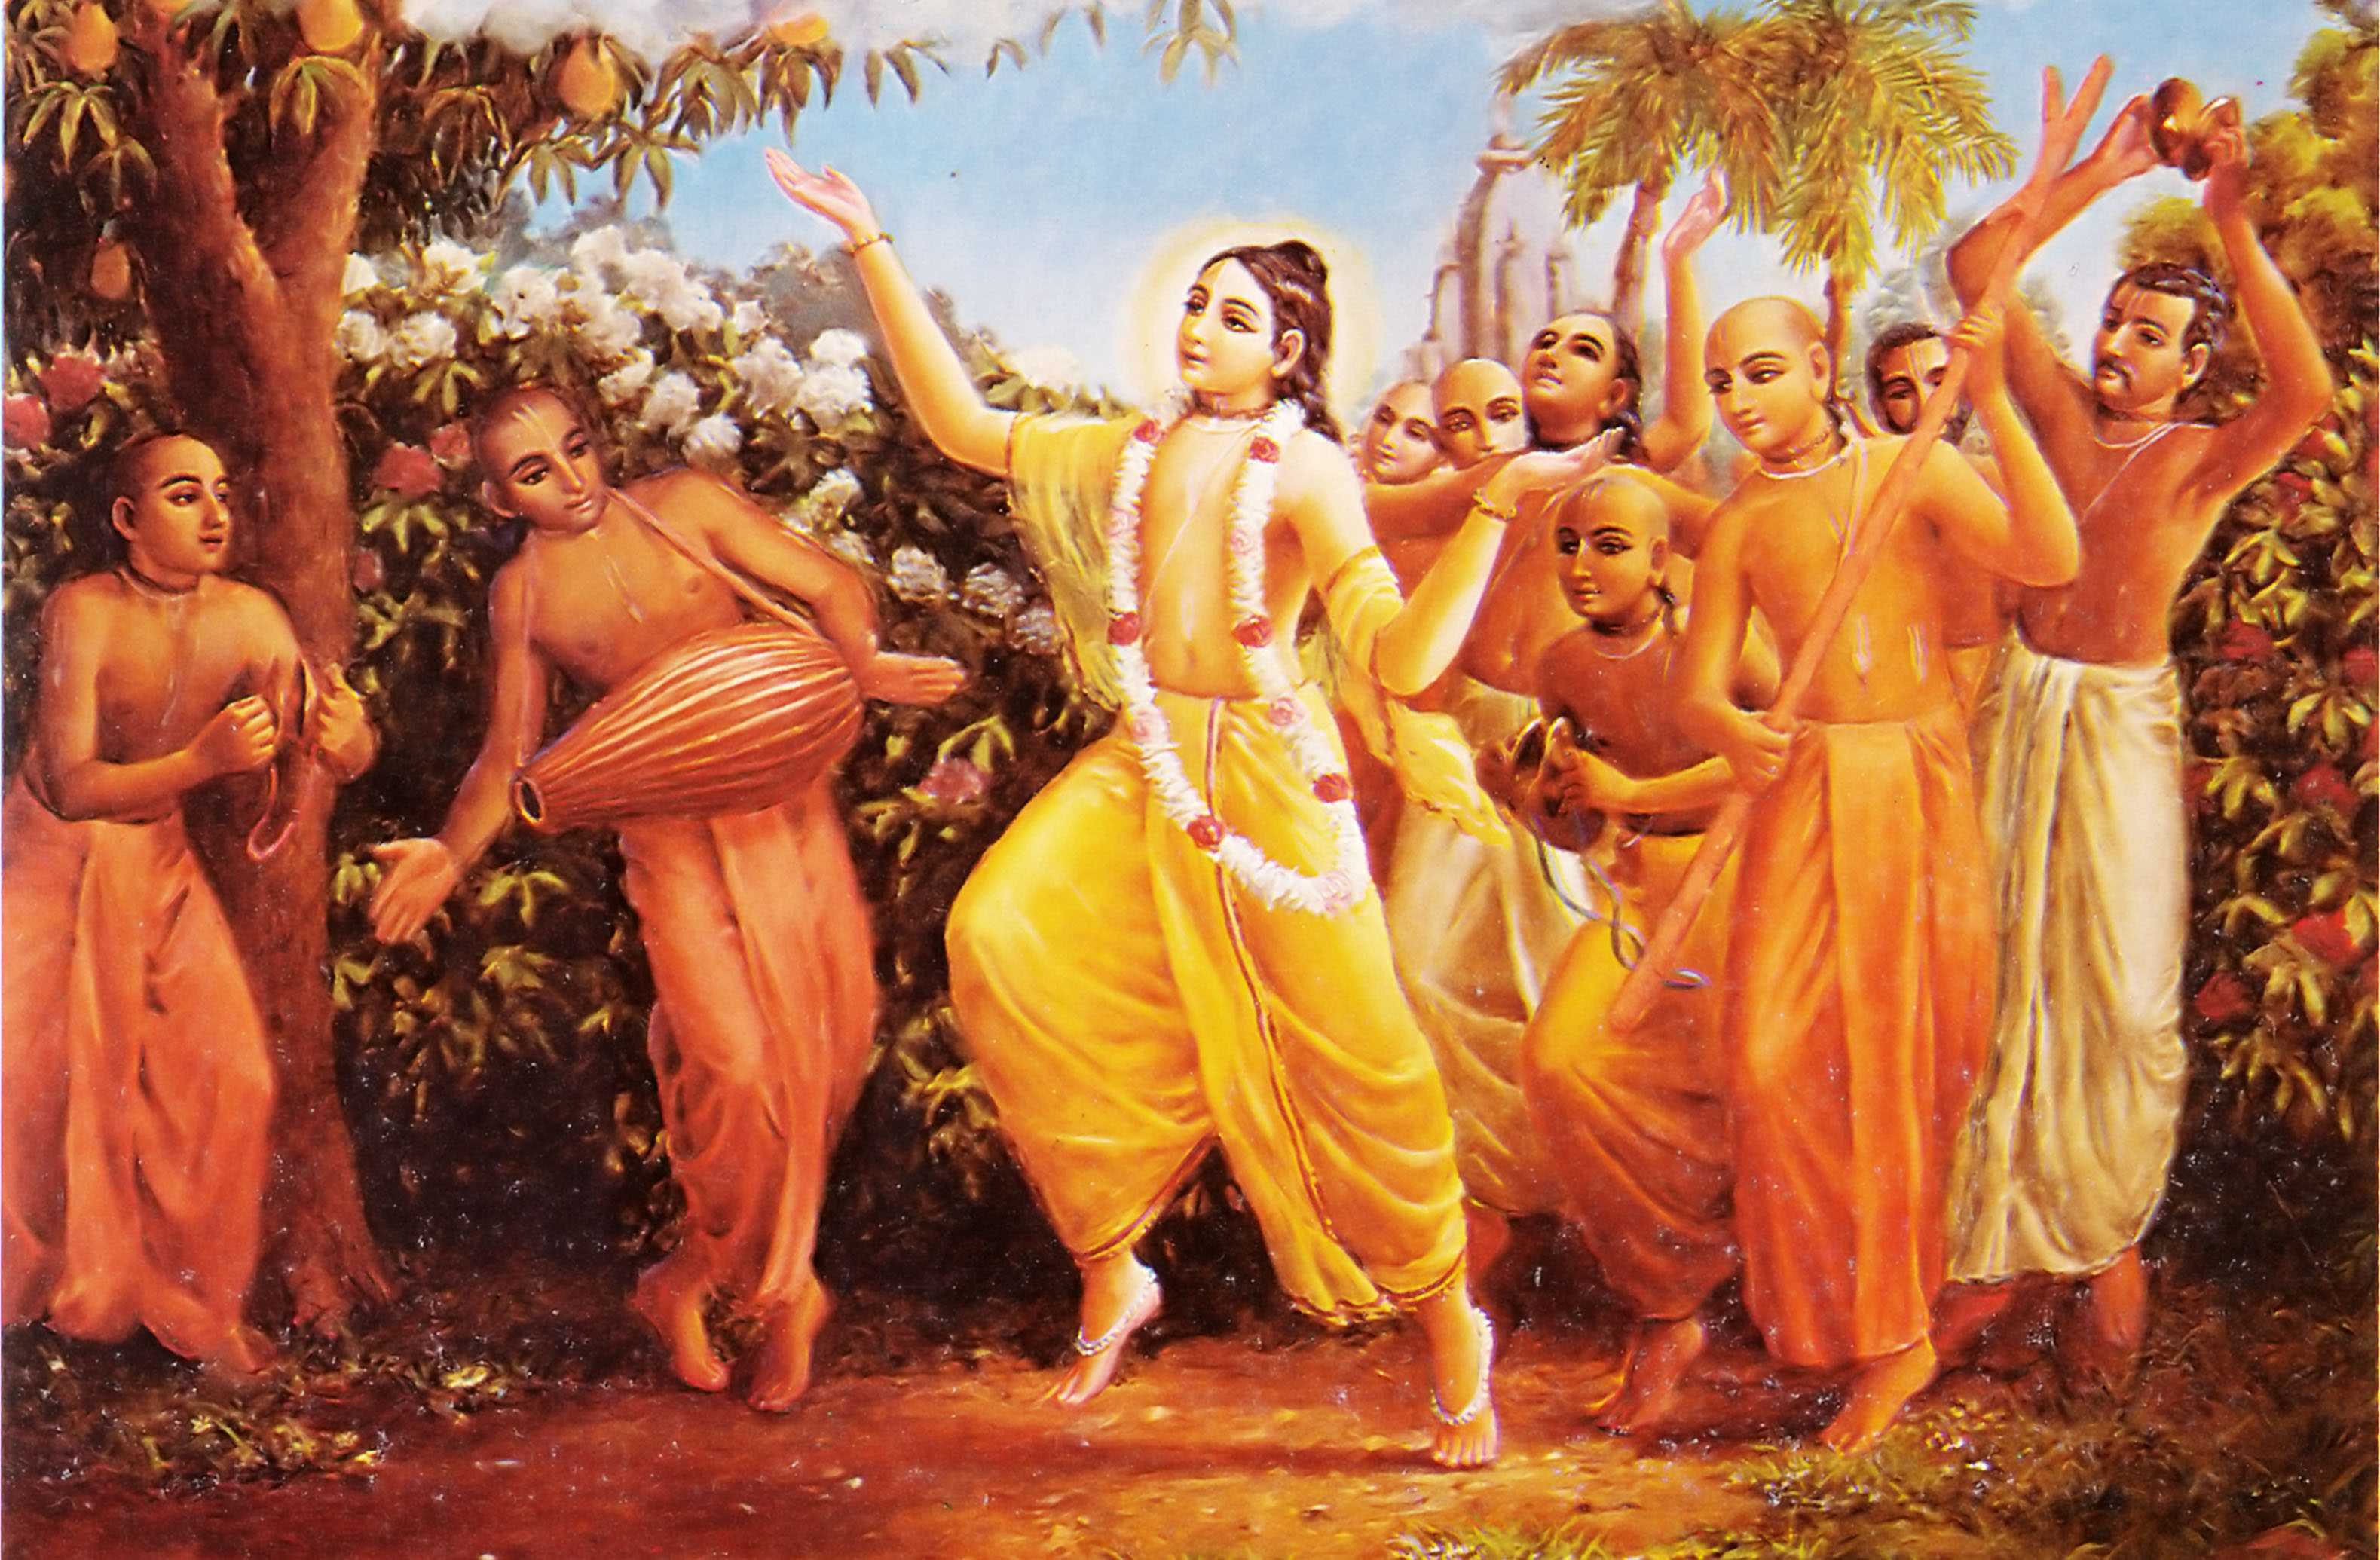 Why should we chant Hare Rama Hare Krishna Mahamantra?